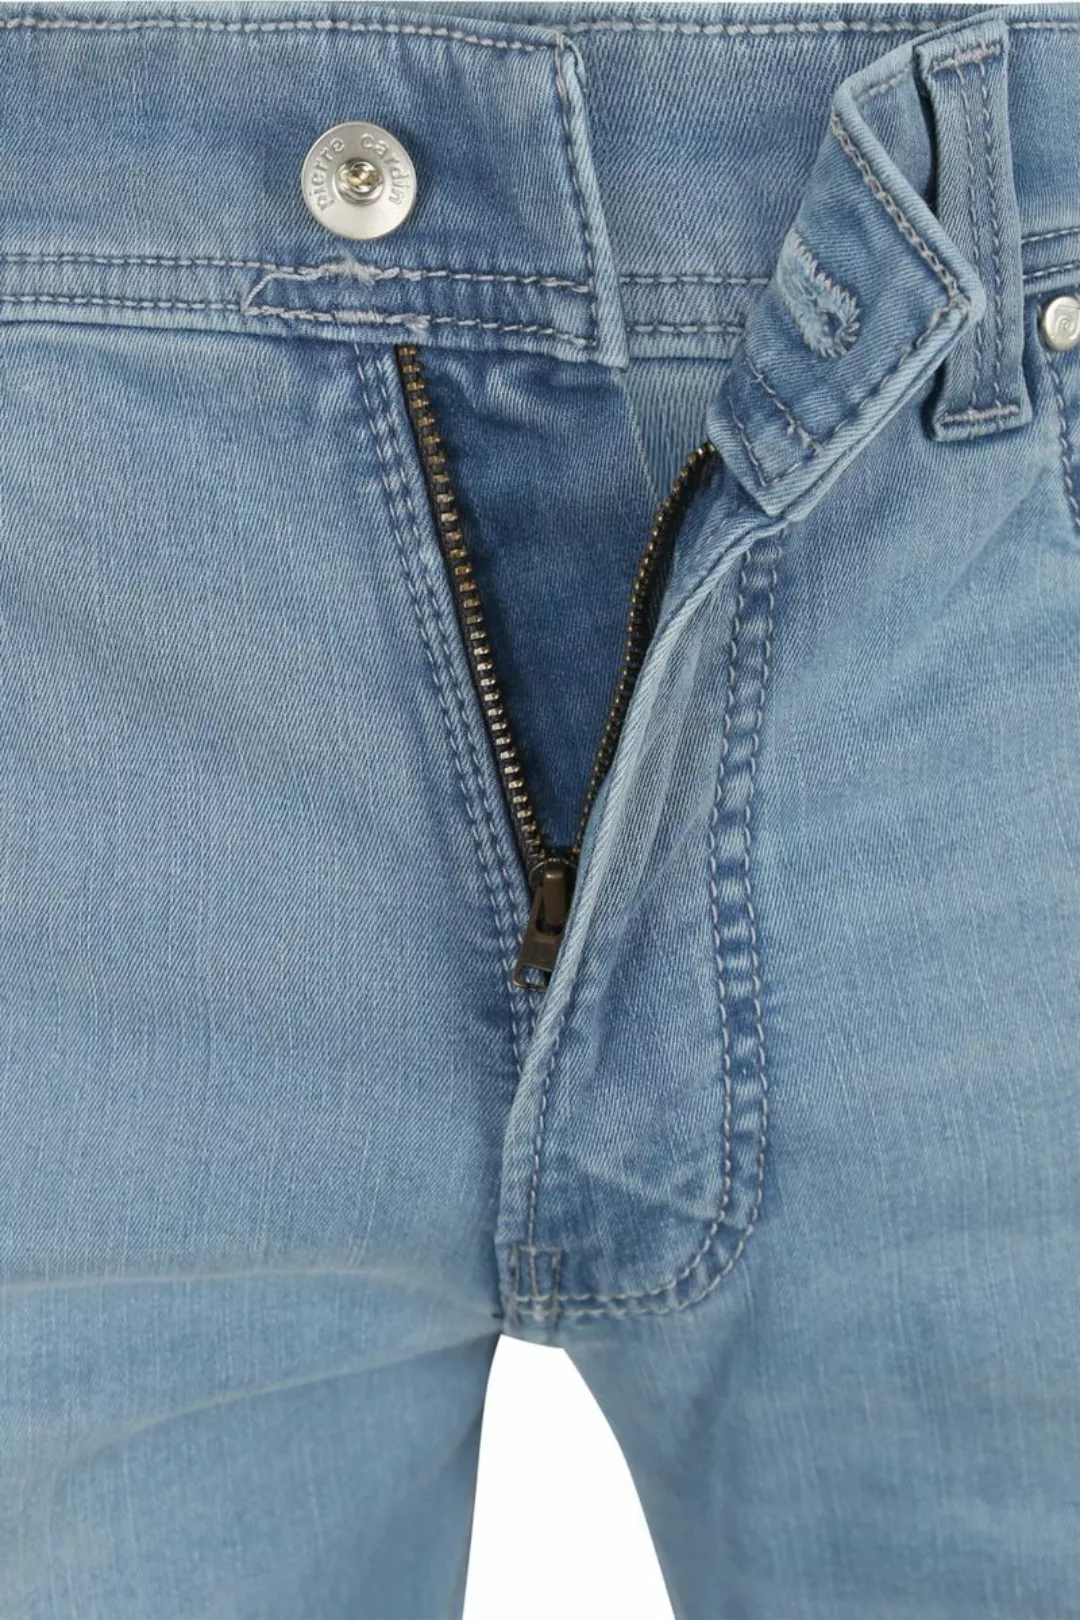 Pierre Cardin Jeans Lyon Tapered Future Flex Hellblau  - Größe W 33 - L 30 günstig online kaufen